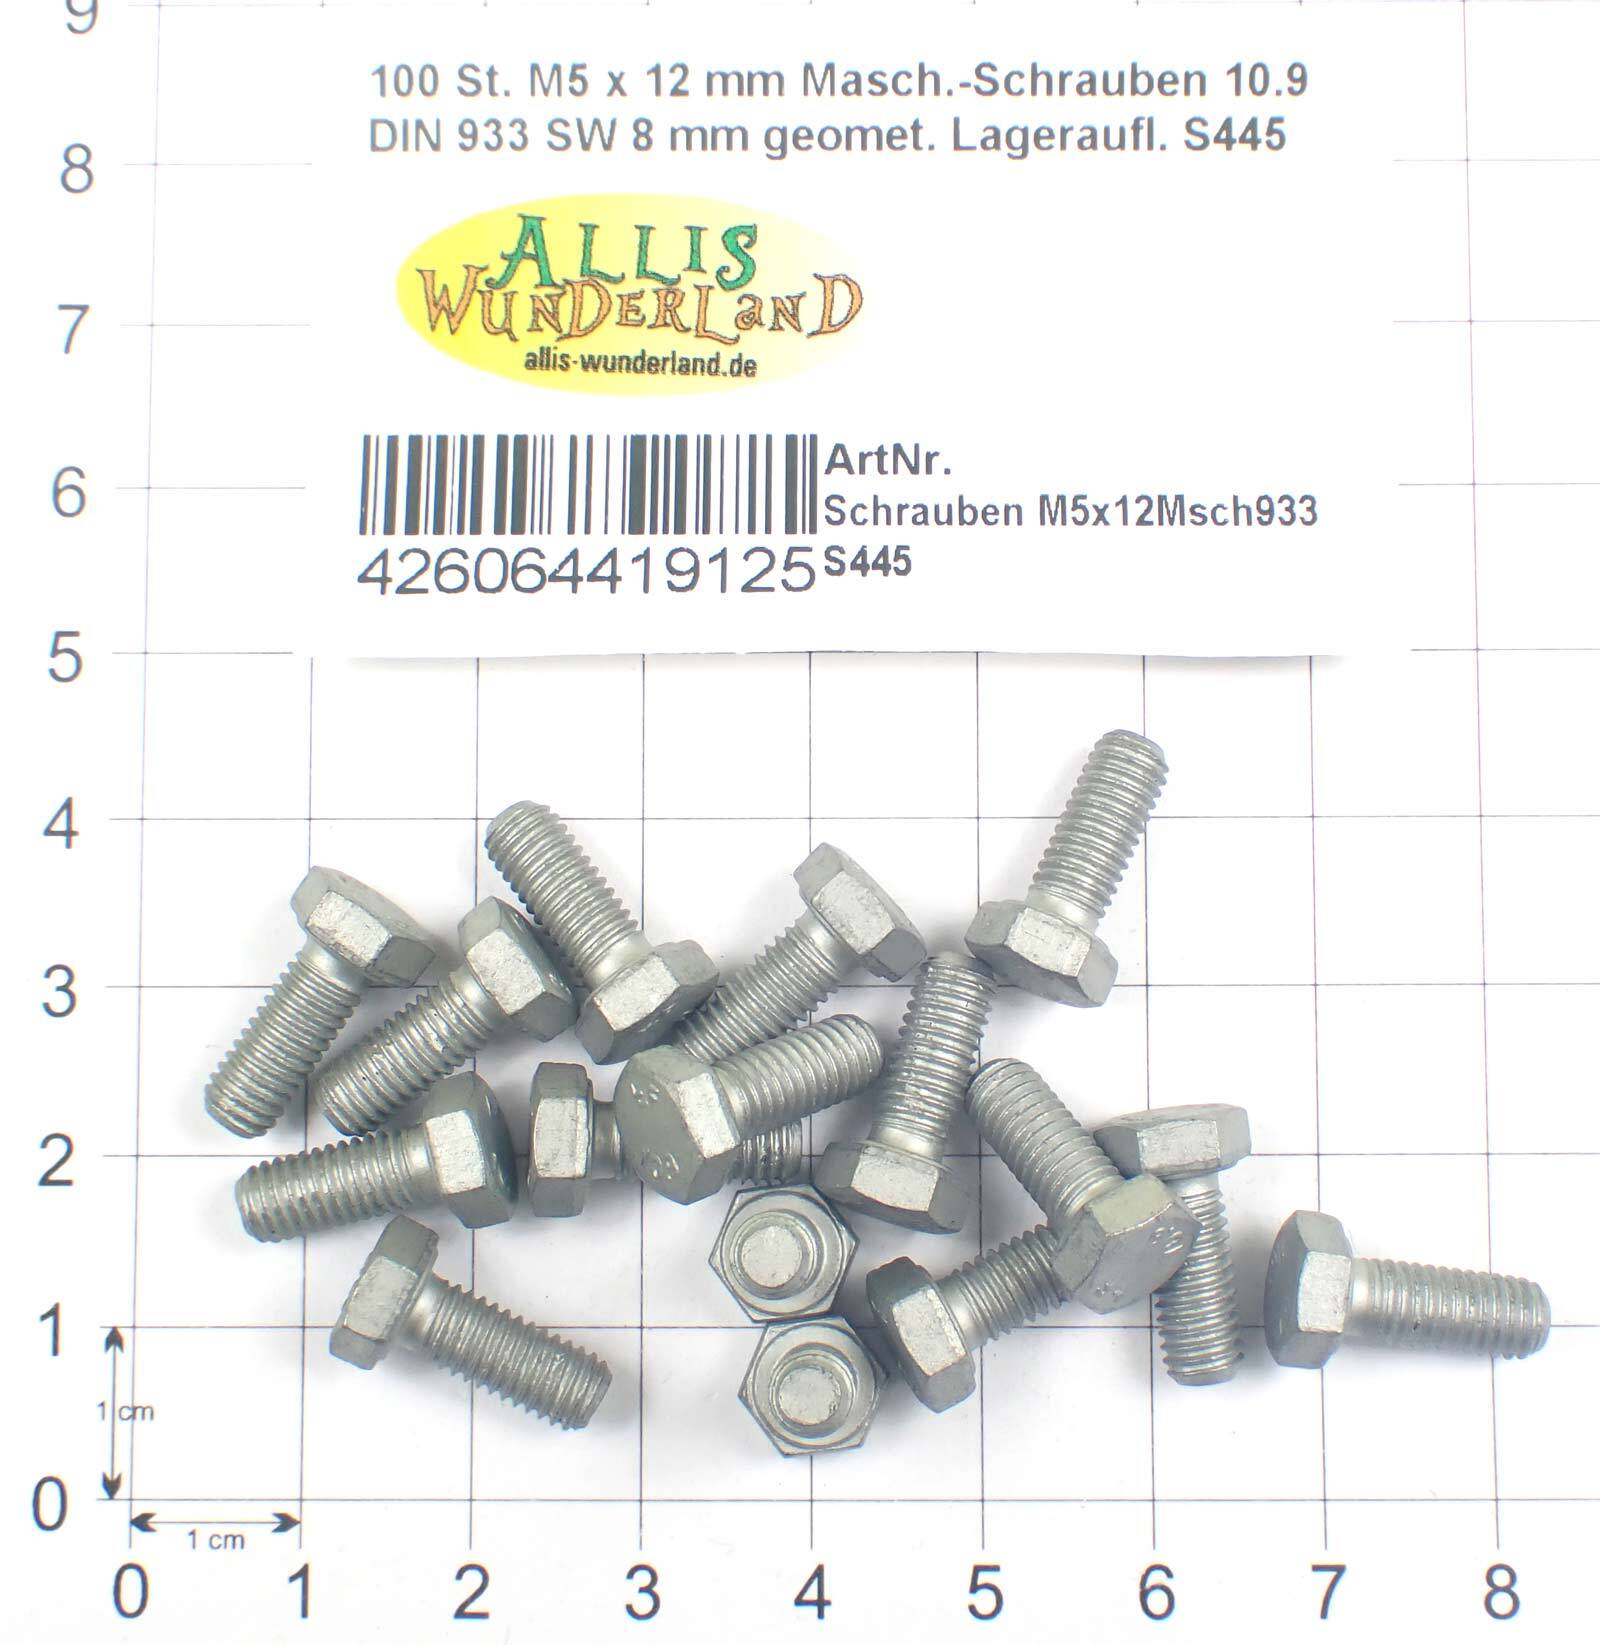 100 St. M5 x 12 mm Masch.-Schrauben 10.9 DIN 933 SW 8 mm geomet